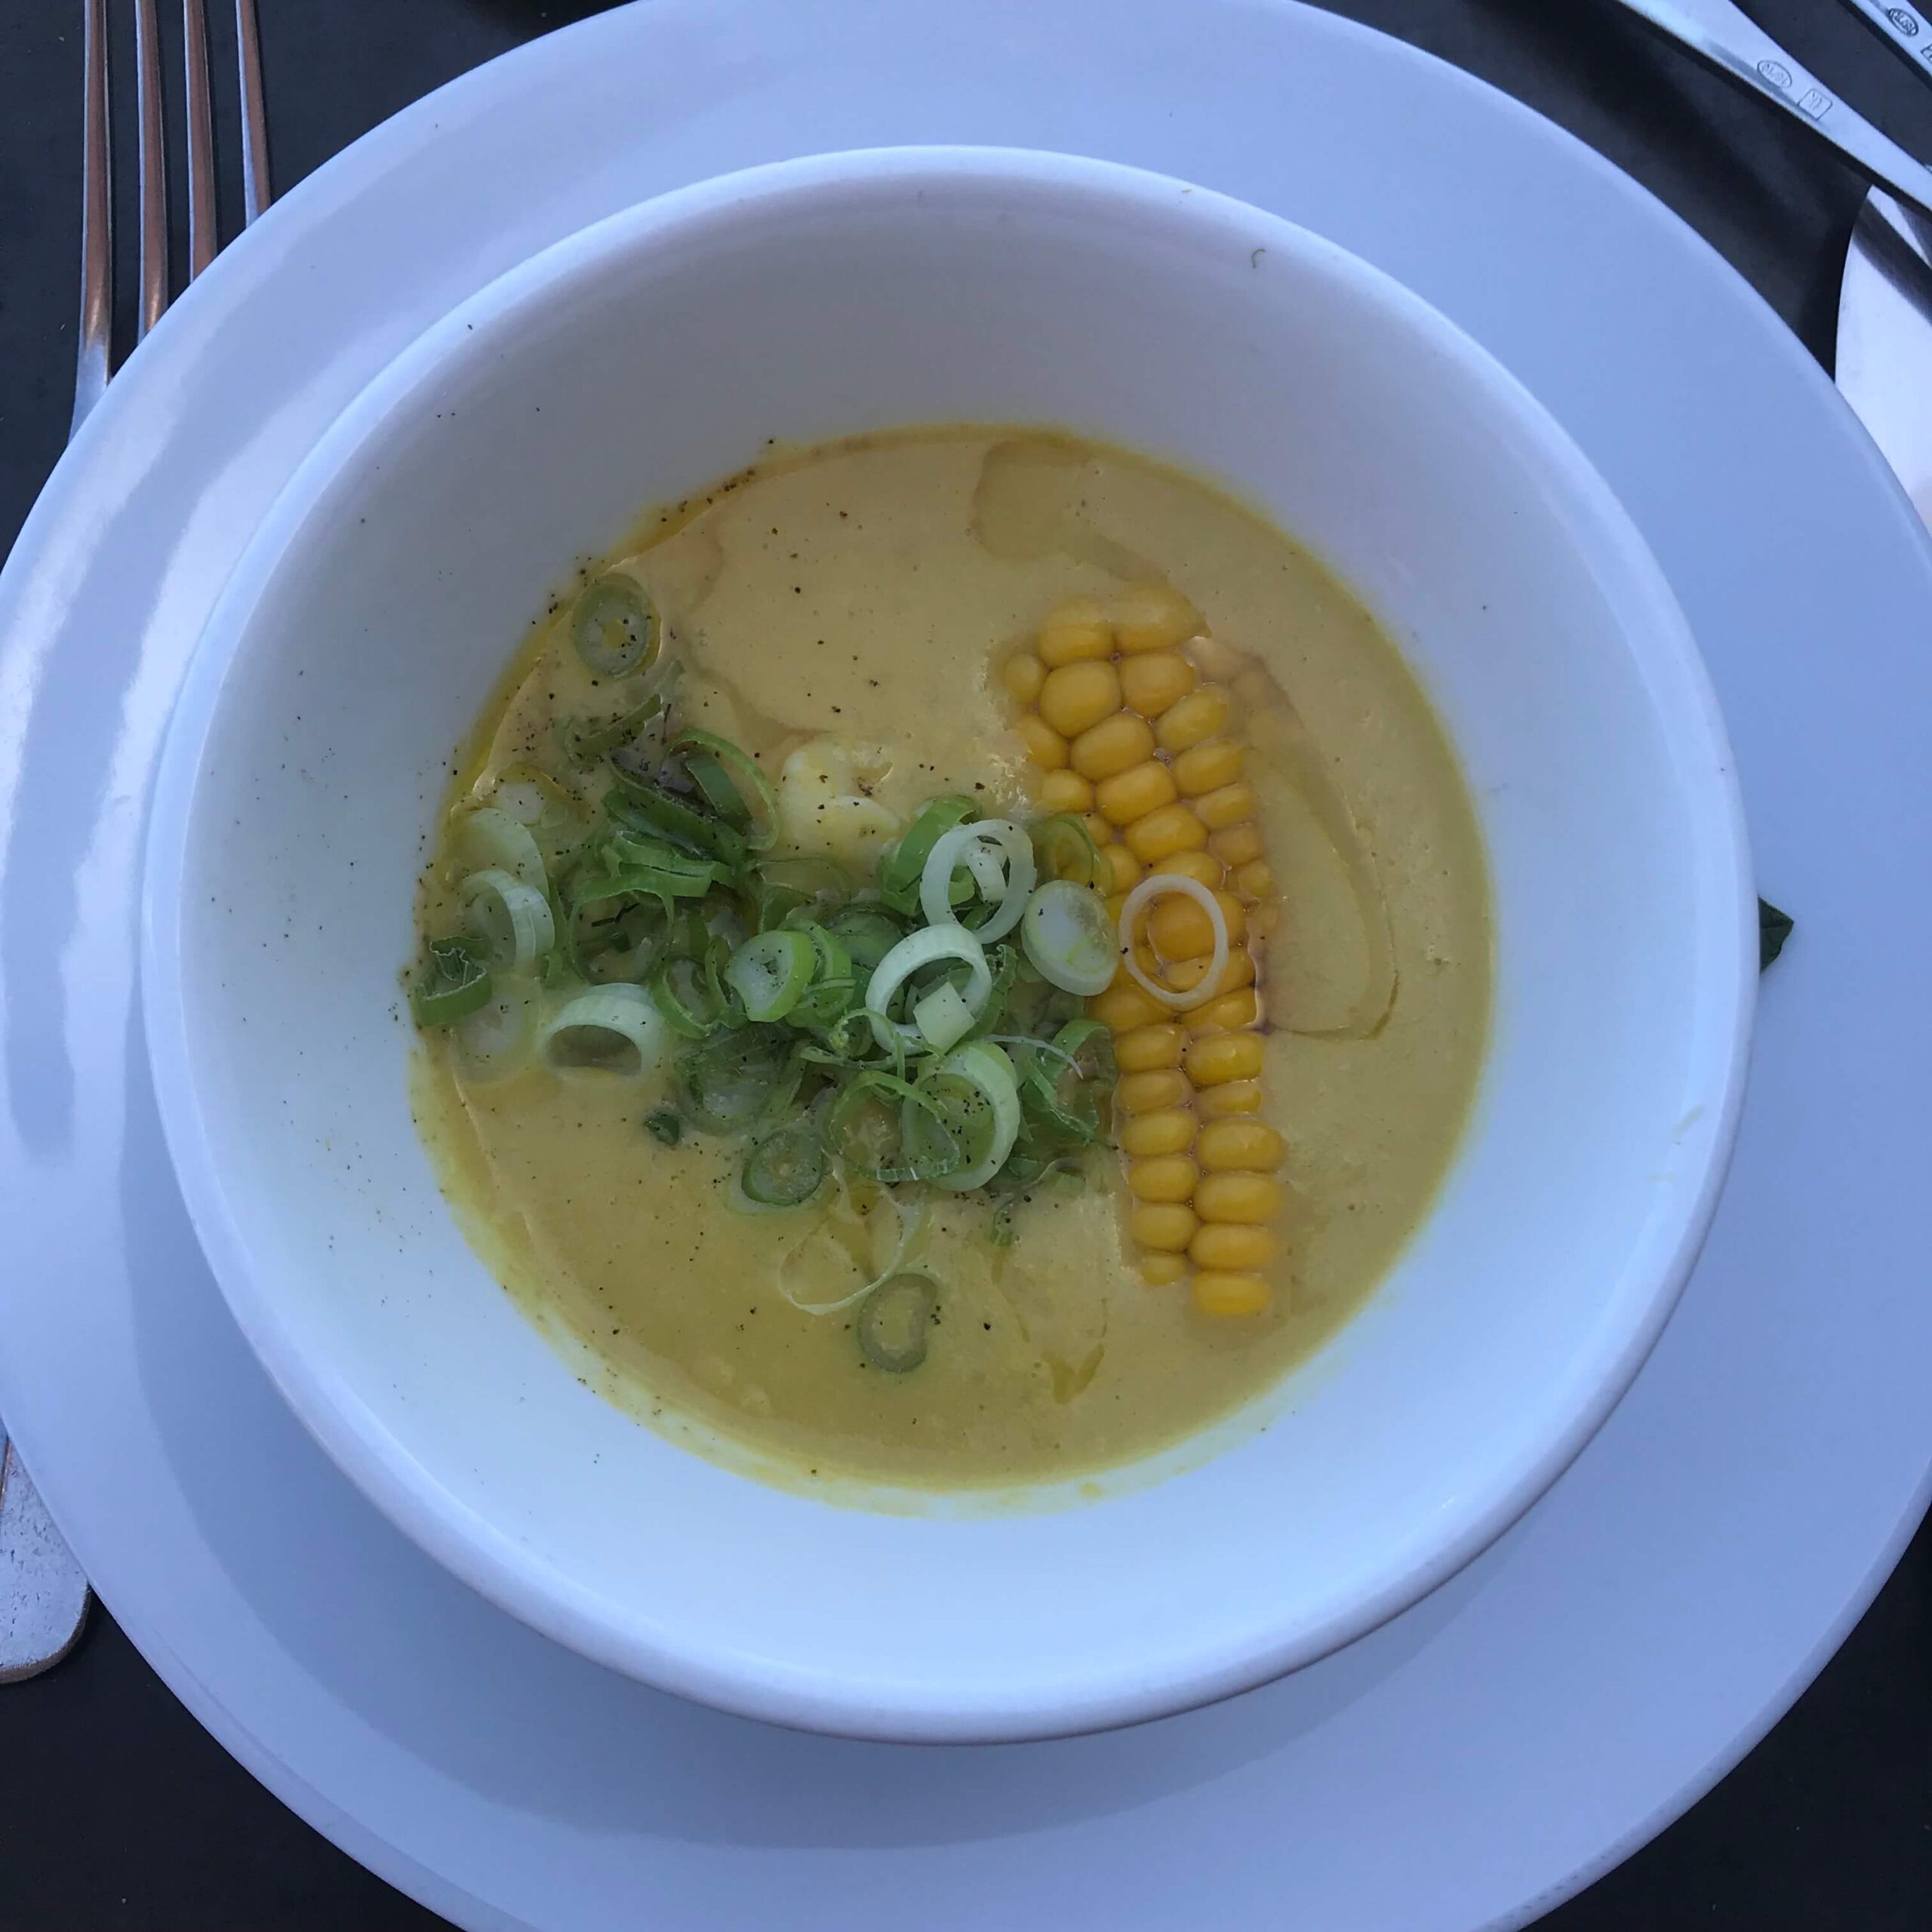 シドニーのレストラン【Sean's】のメニュー「とうもろこしの冷製スープ」を撮影した写真